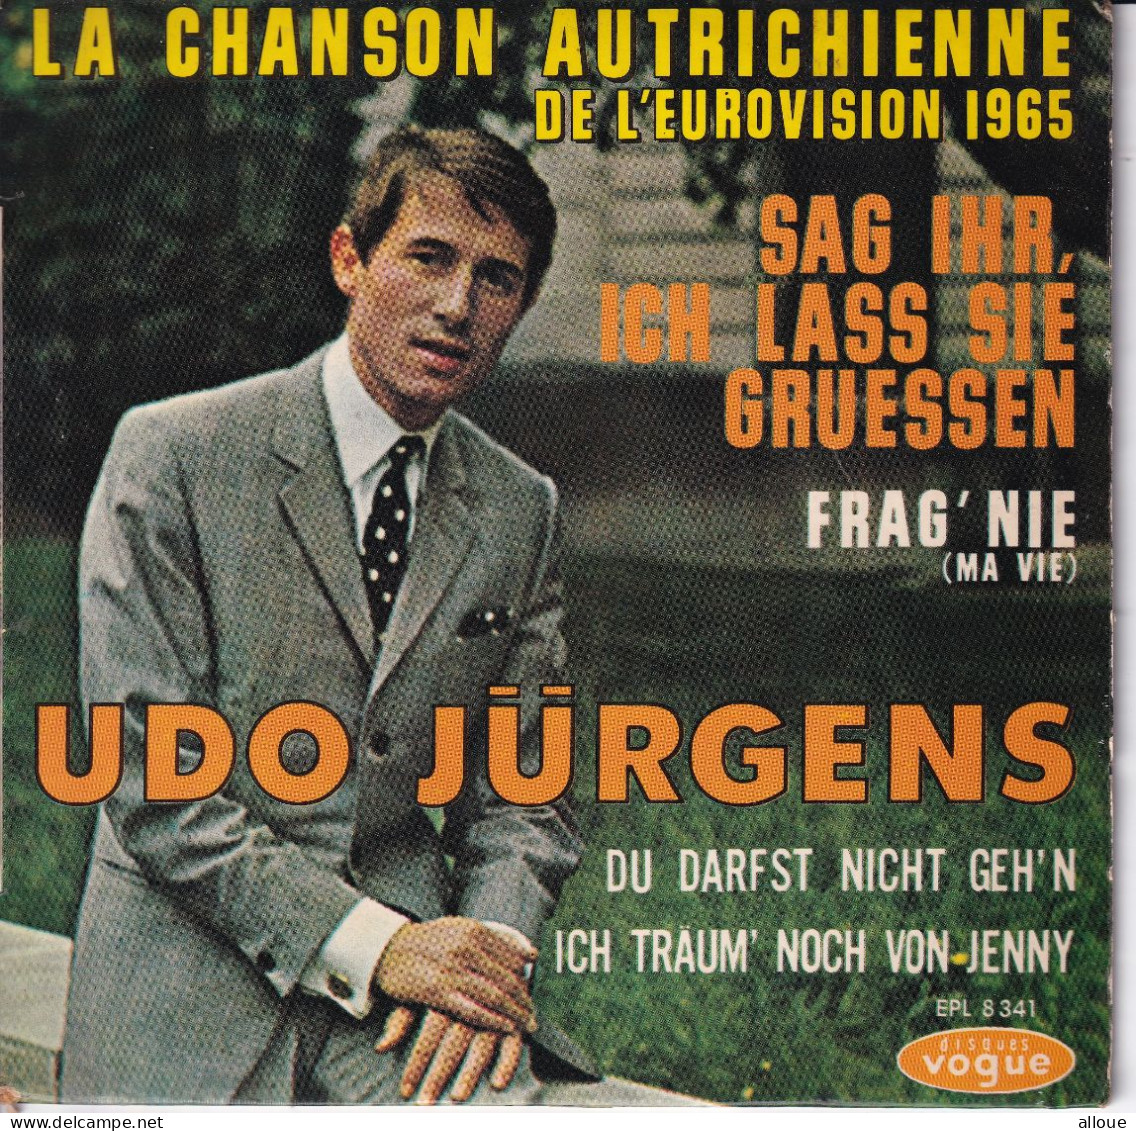 UDO JURGENS - FR EP EUROVISION 1965  - SAG IHR, ICH LASS SIE GRUESSEN + 3 - Autres - Musique Allemande